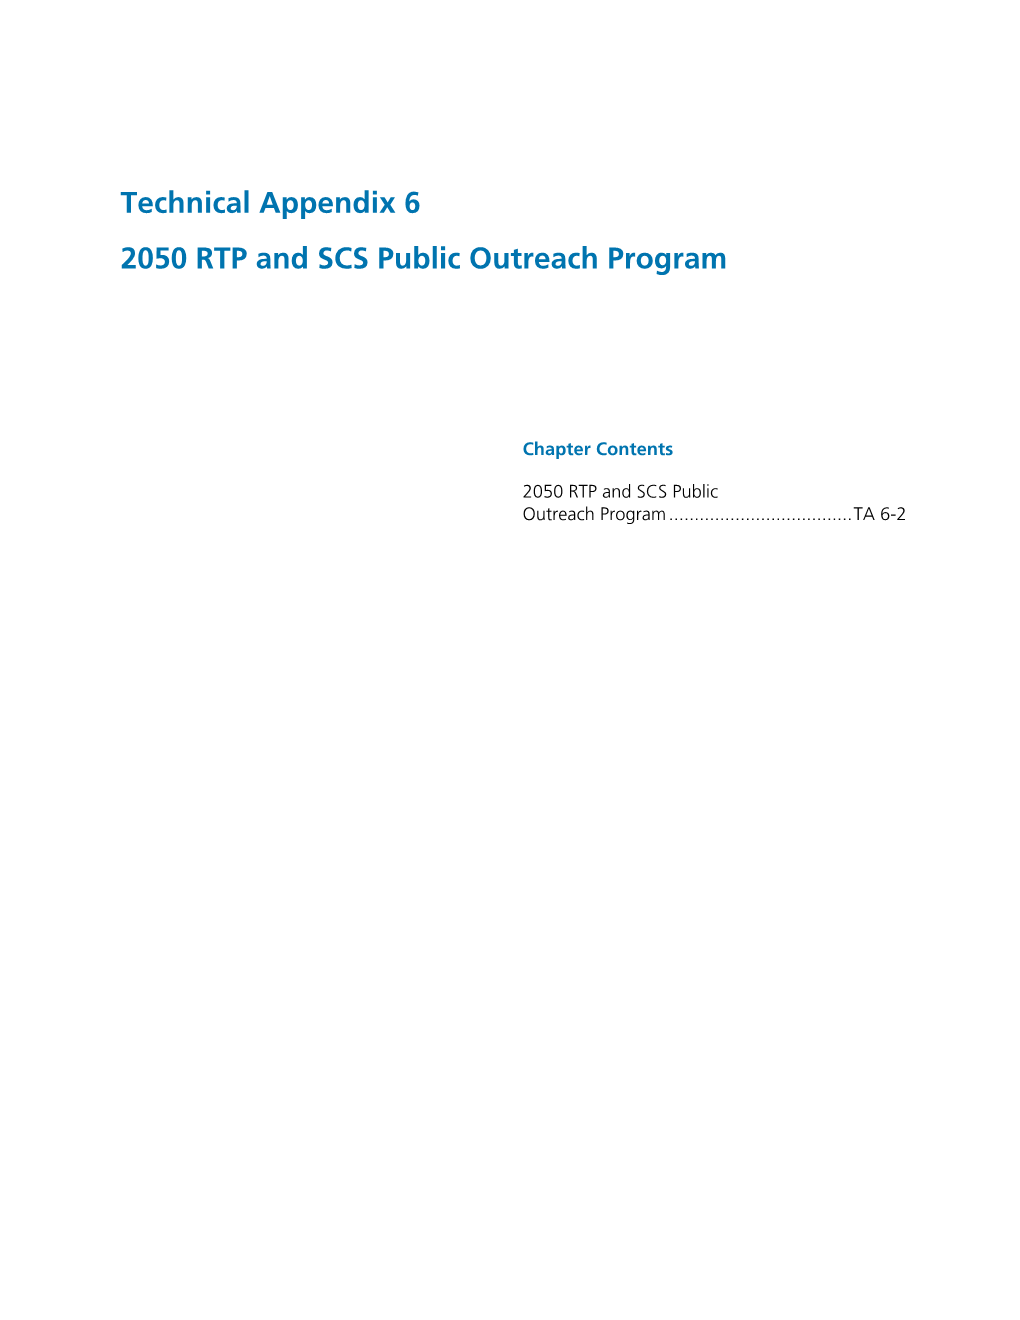 Technical Appendix 6 2050 RTP and SCS Public Outreach Program